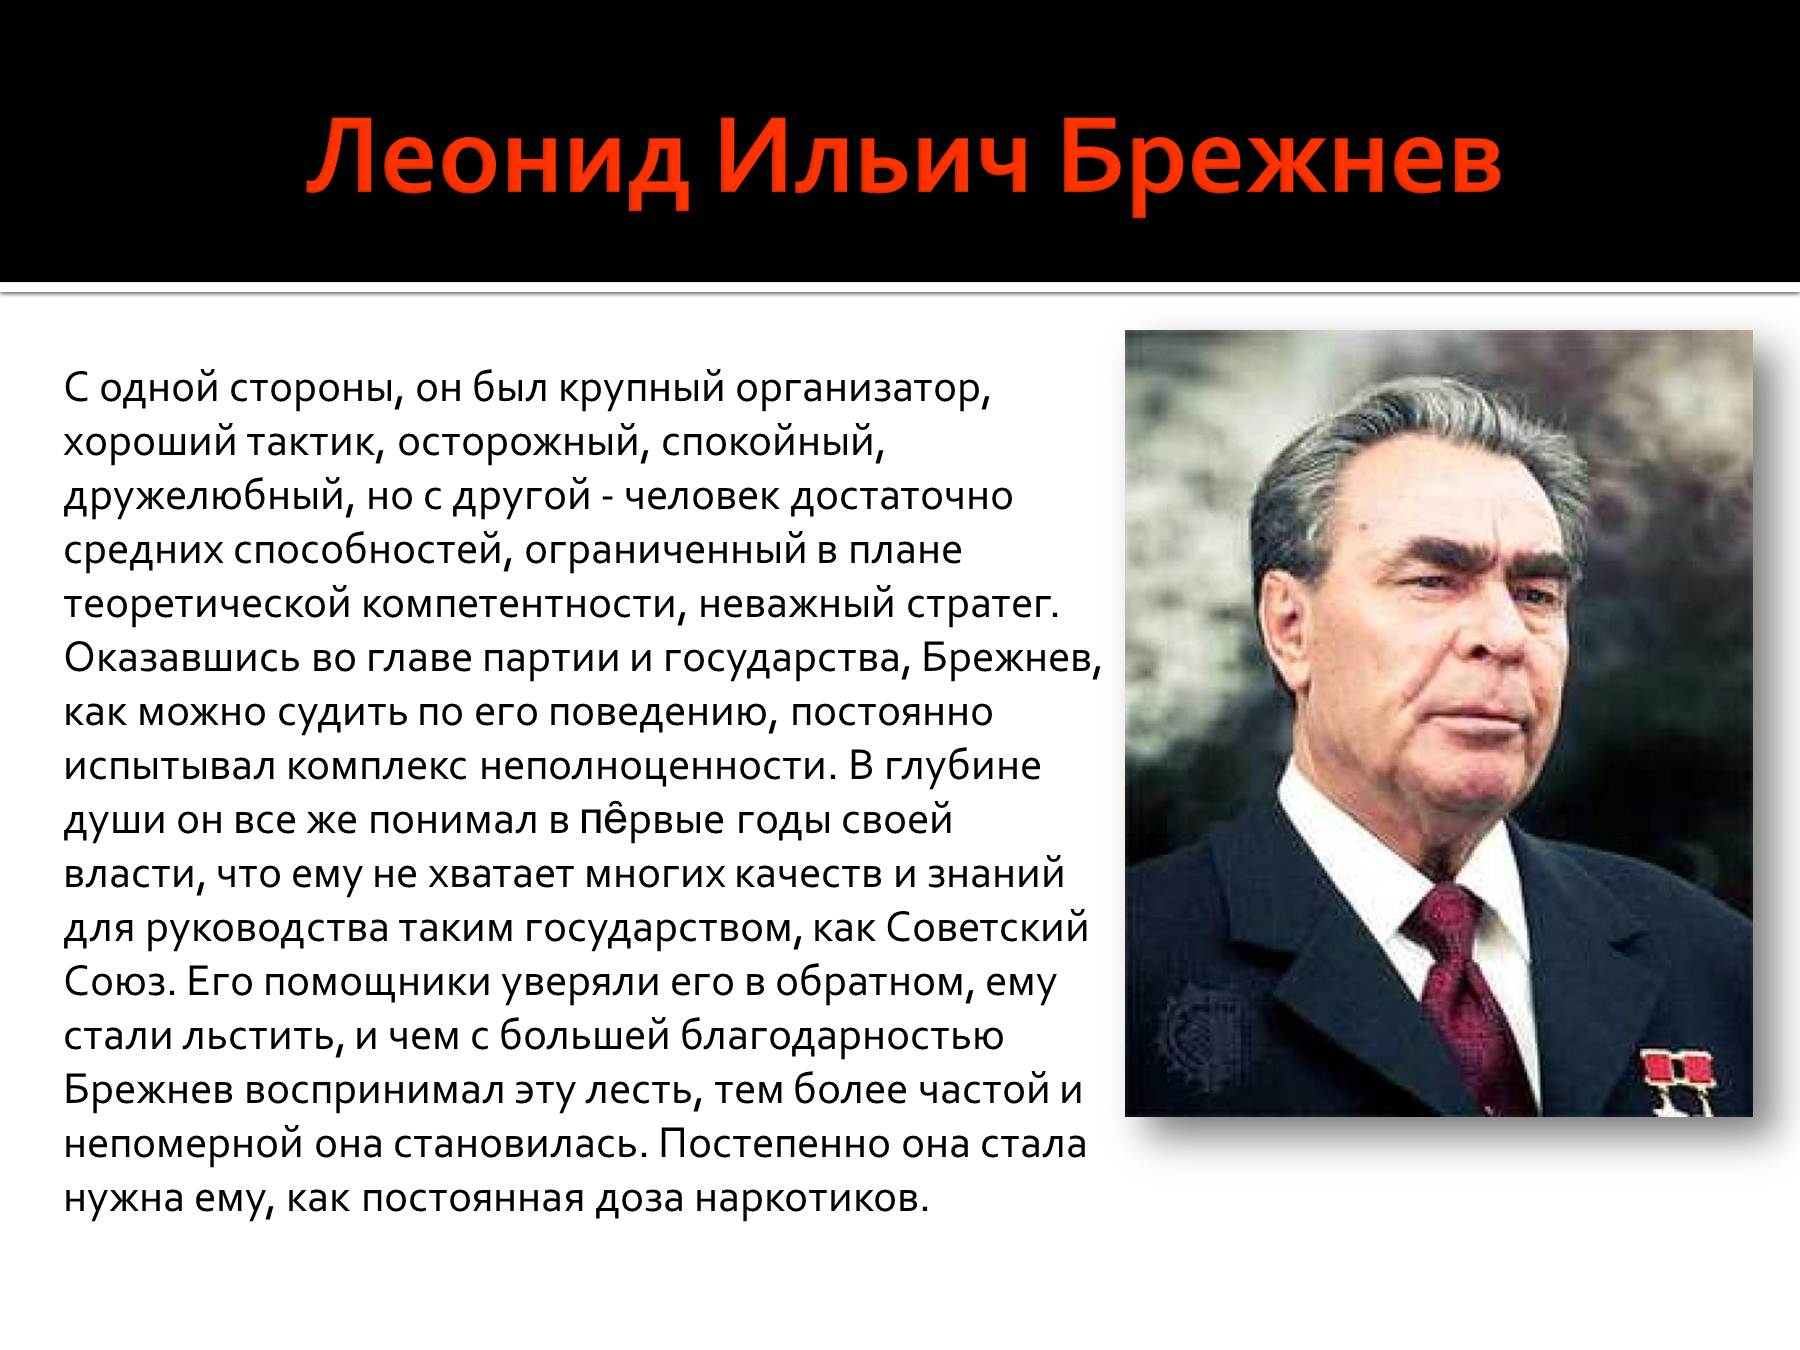 Сколько руководил брежнев. Политический портрет л и Брежнева кратко. Брежнев исторический портрет эпоха застоя.